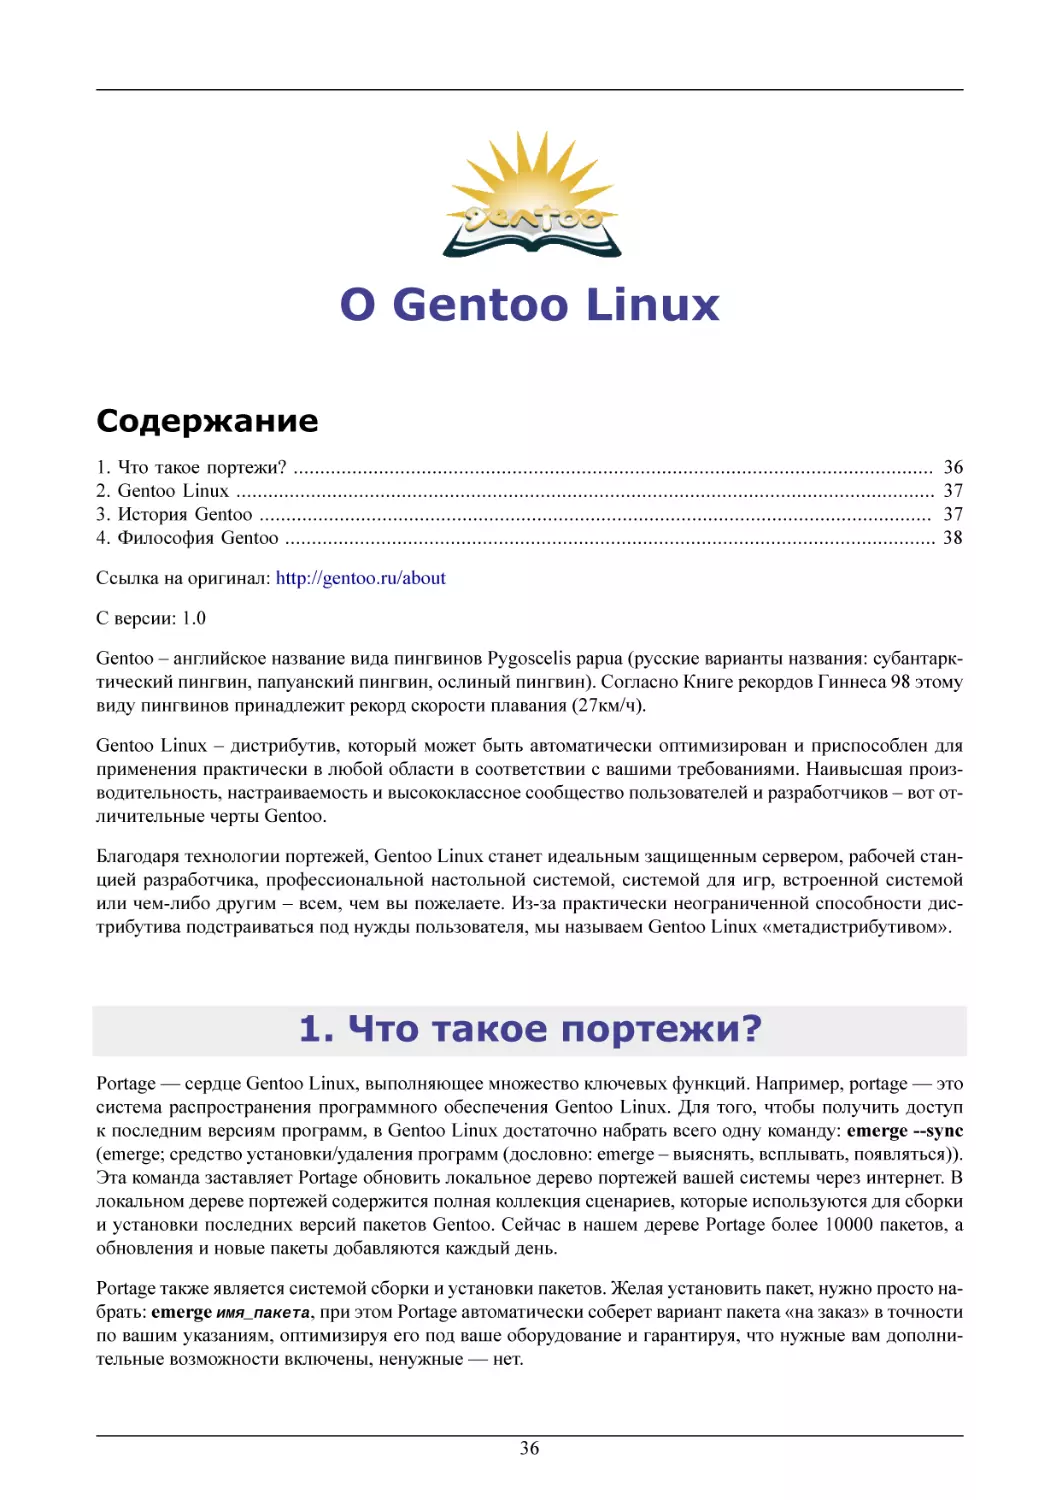 О Gentoo Linux
Что такое портежи?